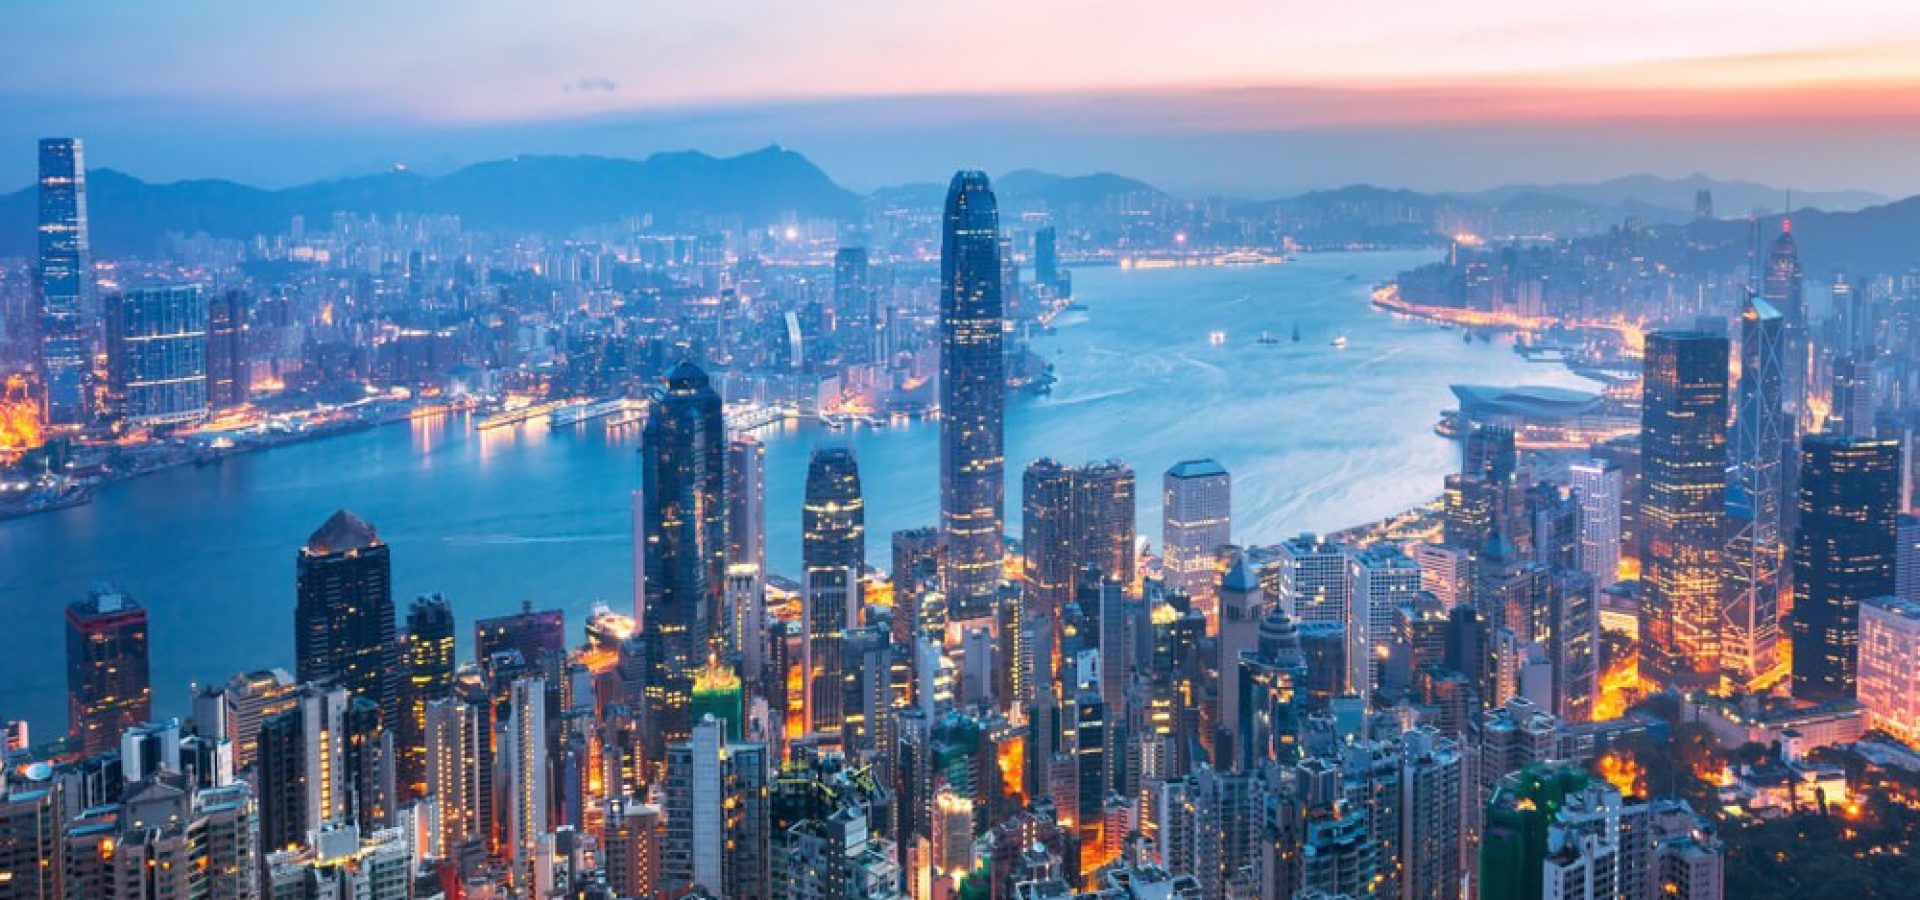 Amazing view in Hong Kong